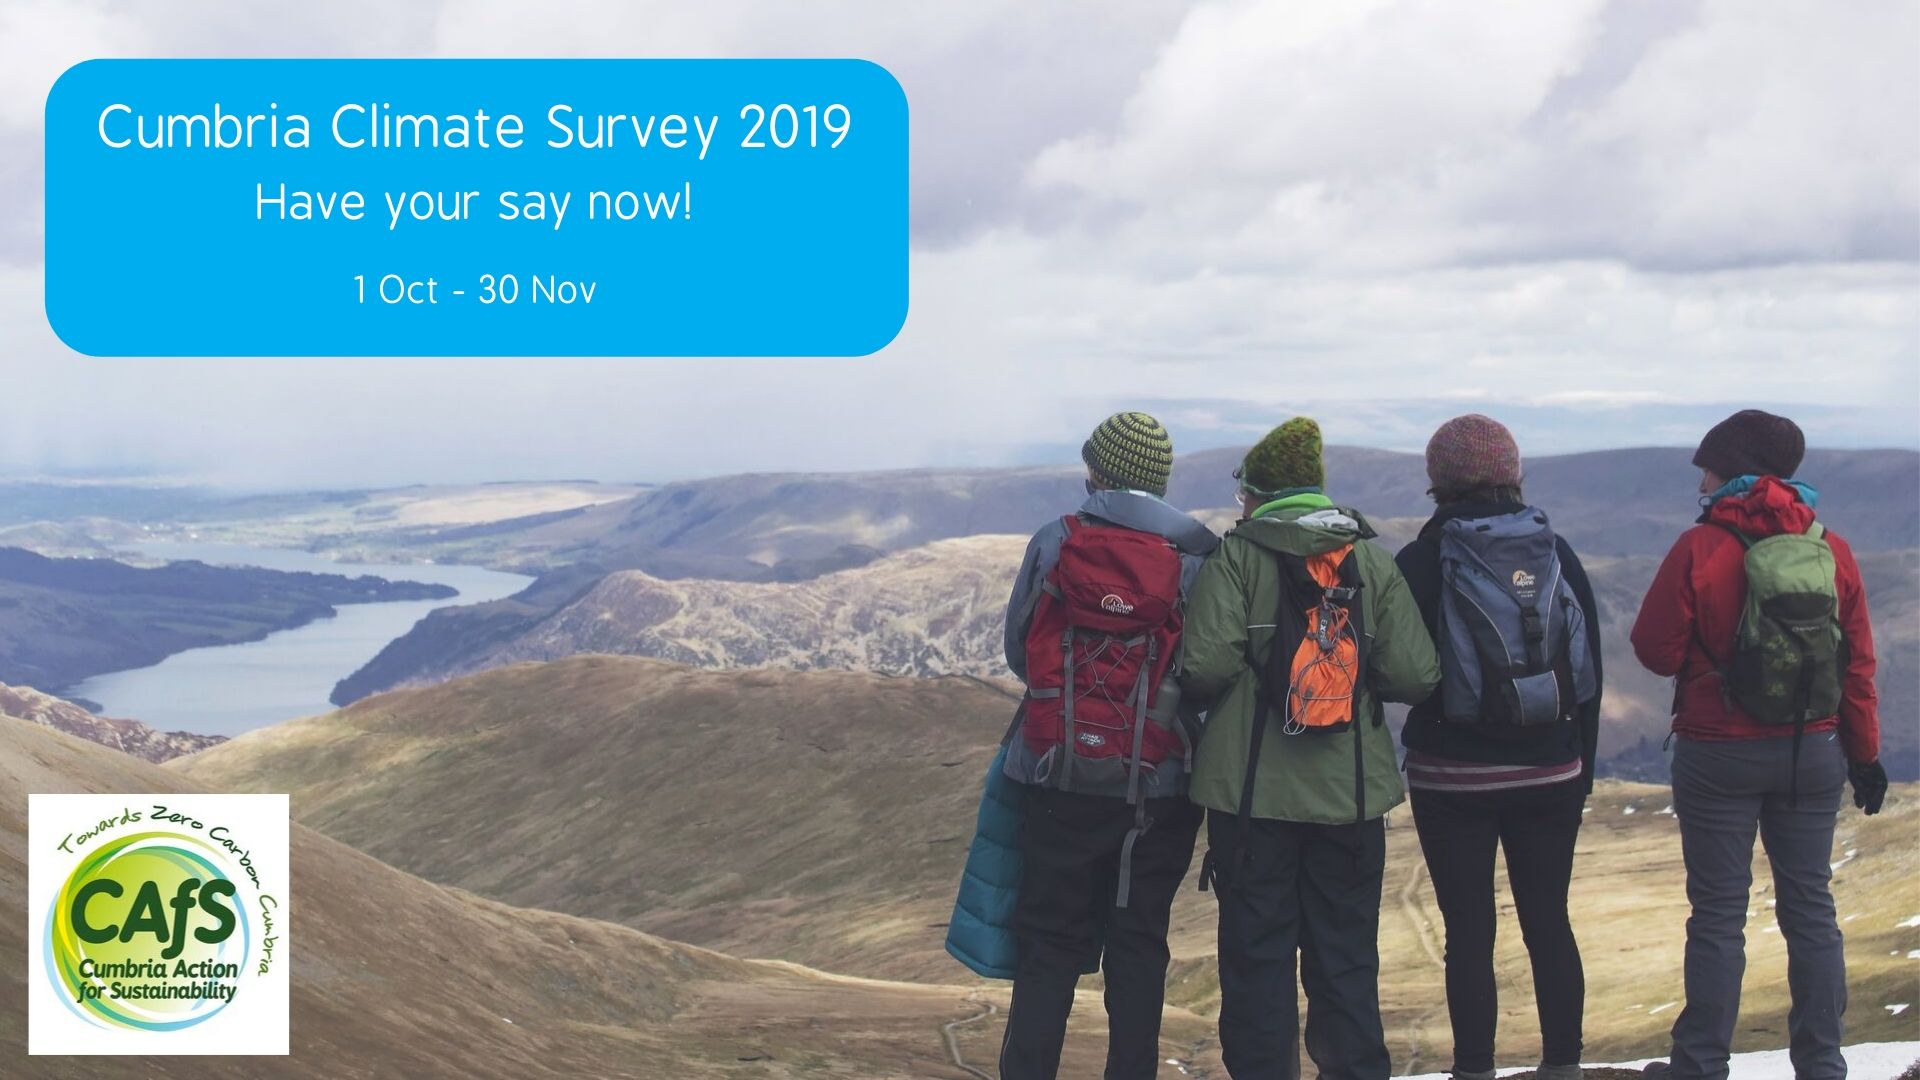 Cumbria Climate Survey 2019 graphic